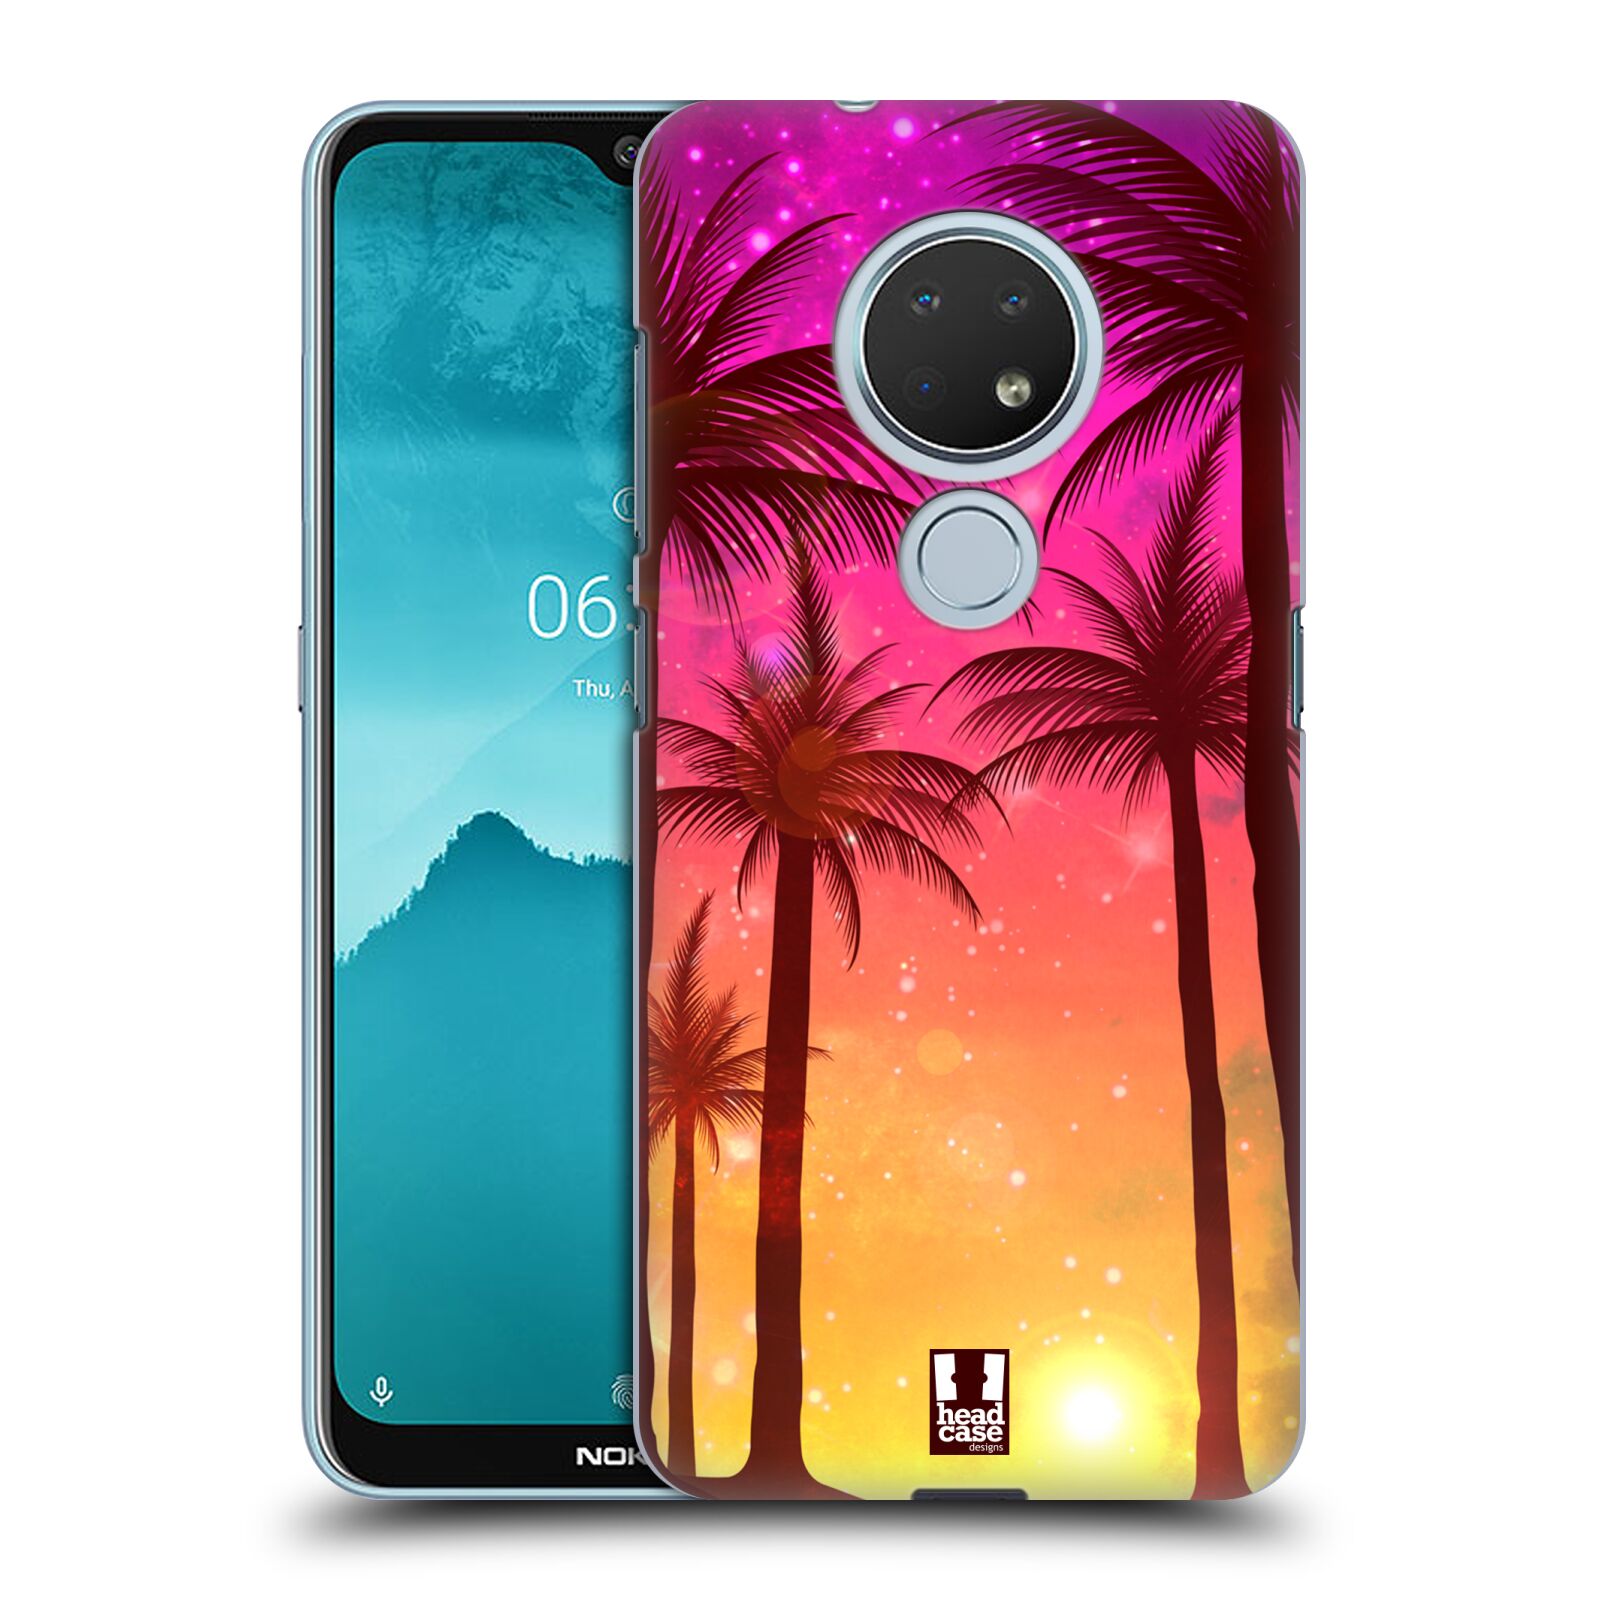 Pouzdro na mobil Nokia 6.2 - HEAD CASE - vzor Kreslený motiv silueta moře a palmy RŮŽOVÁ